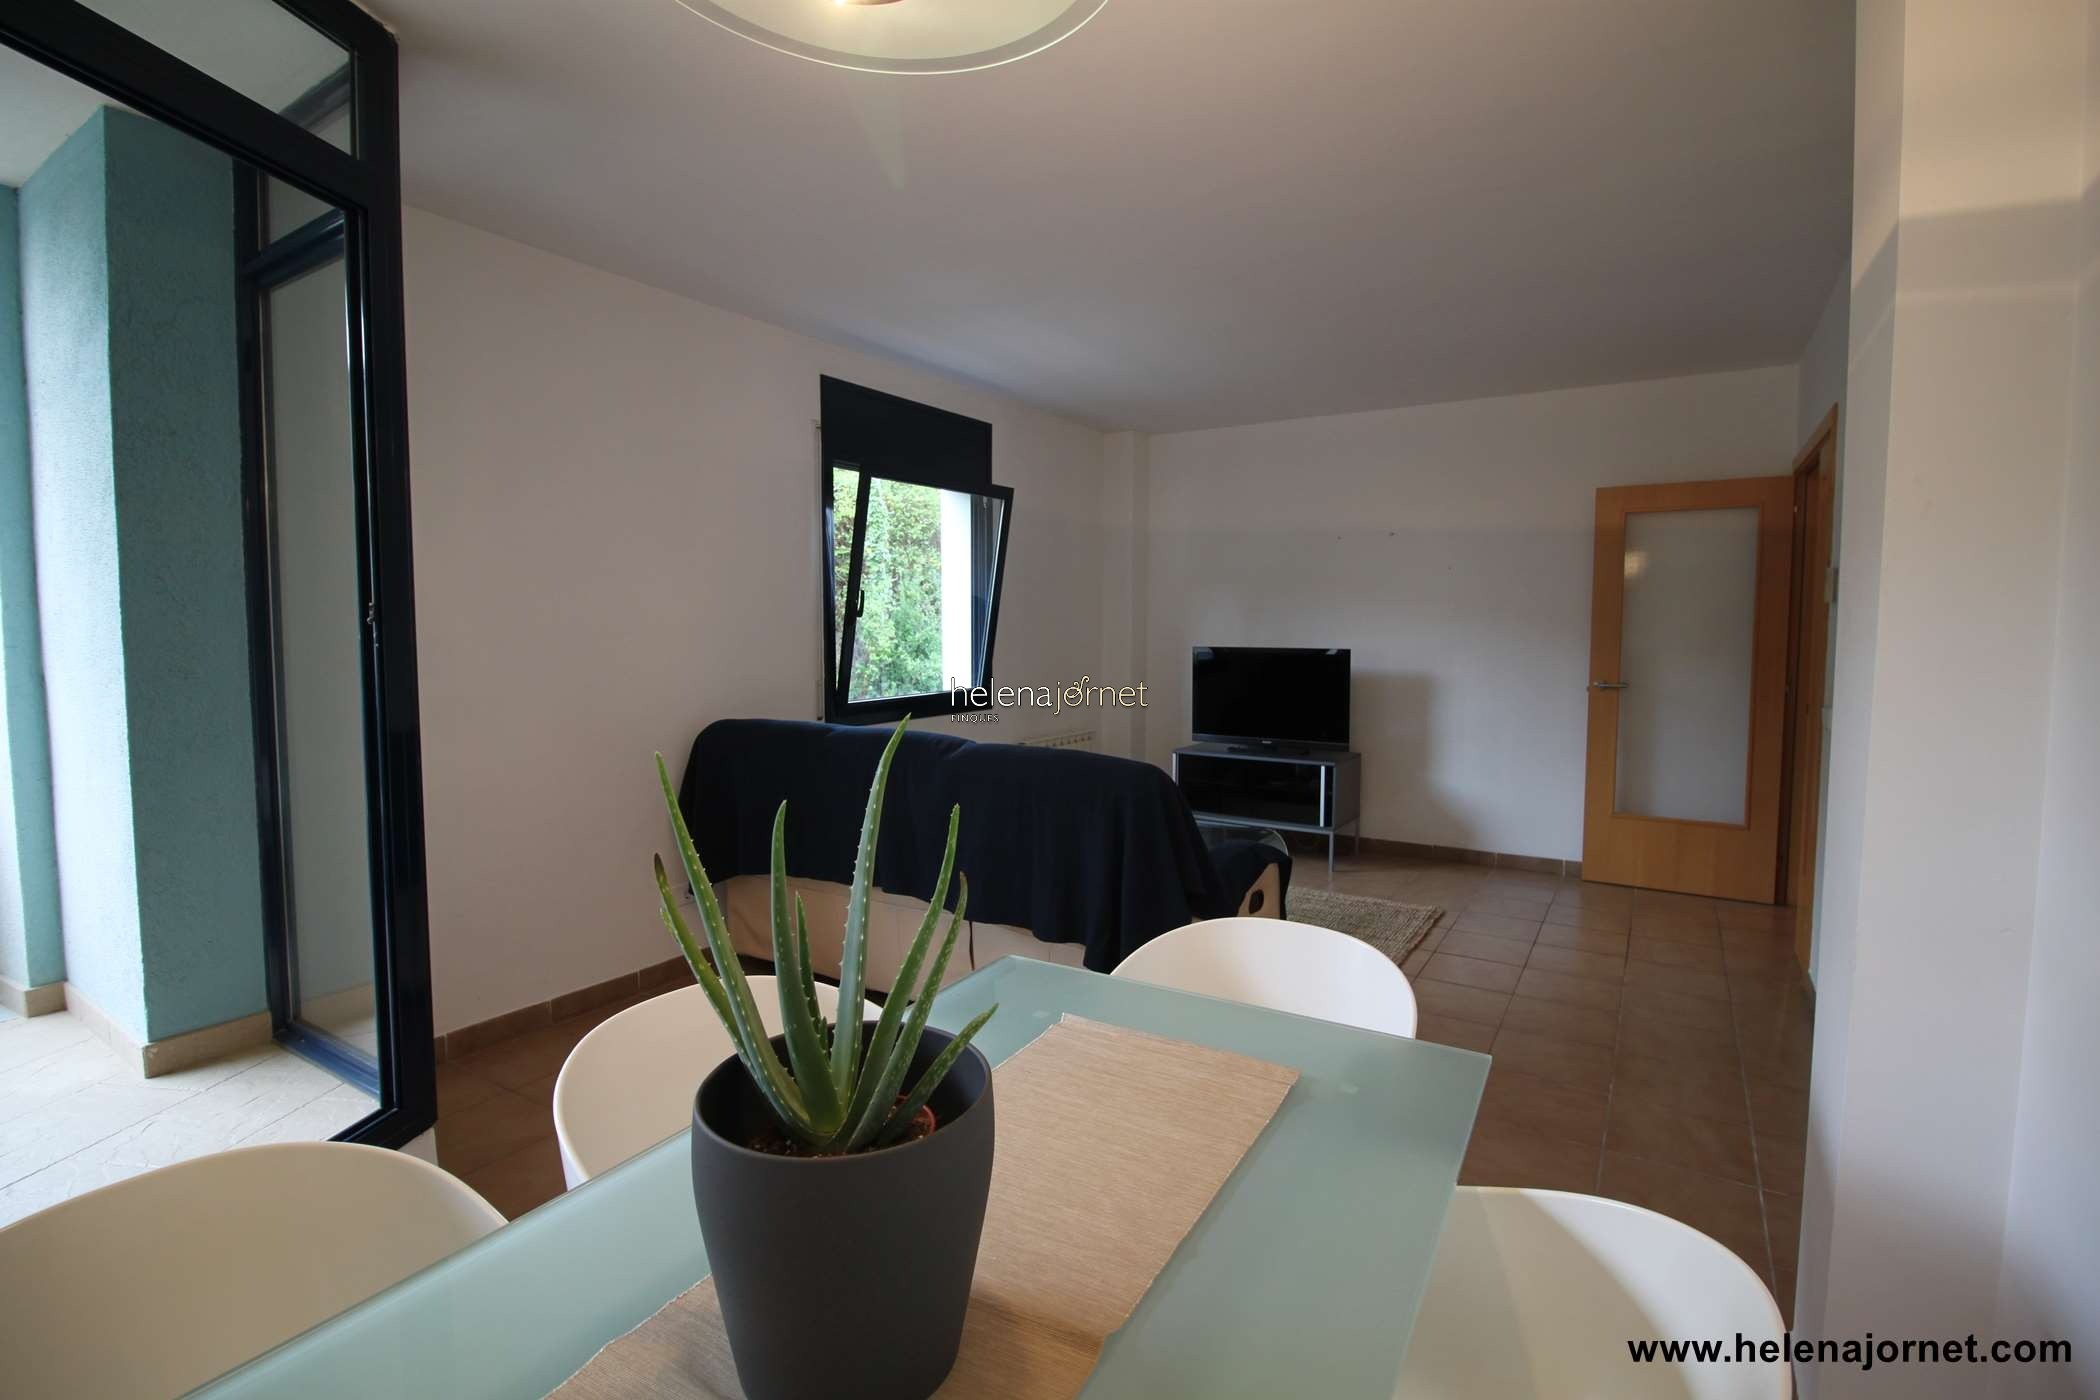 Apartamento con terraza y piscina comunitaria a 5 minutos de la playa - 70110 - Sant Feliu